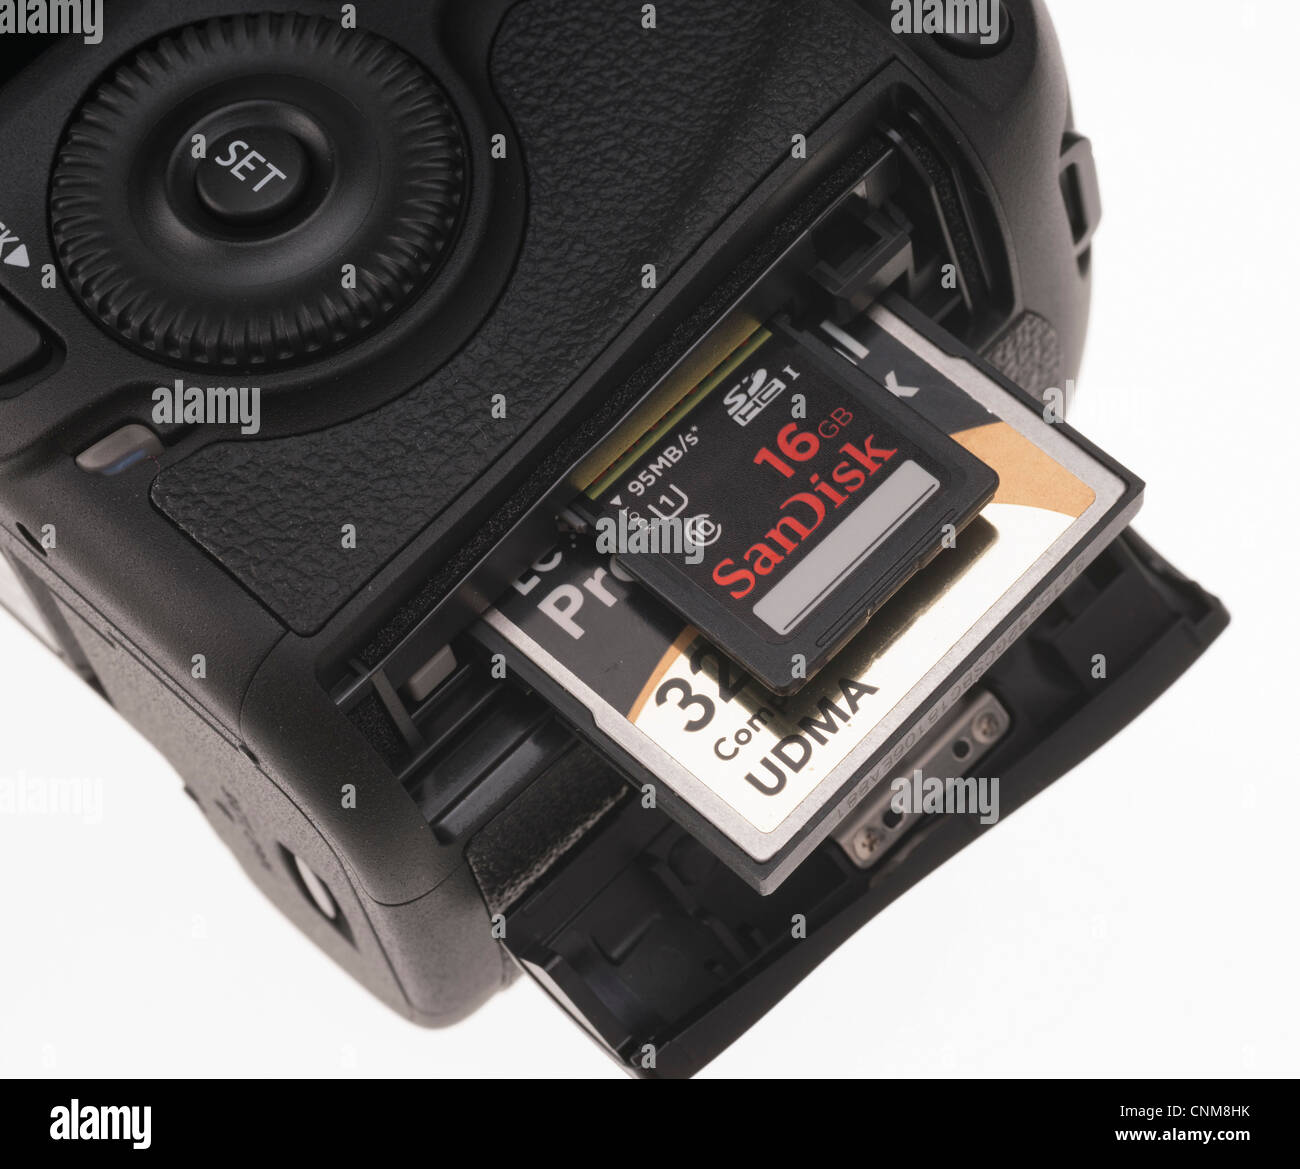 Fotoausrüstung - Canon EOS 5D MkIII CompactFlash und SDHC-Kartensteckplätze zeigen. Stockfoto